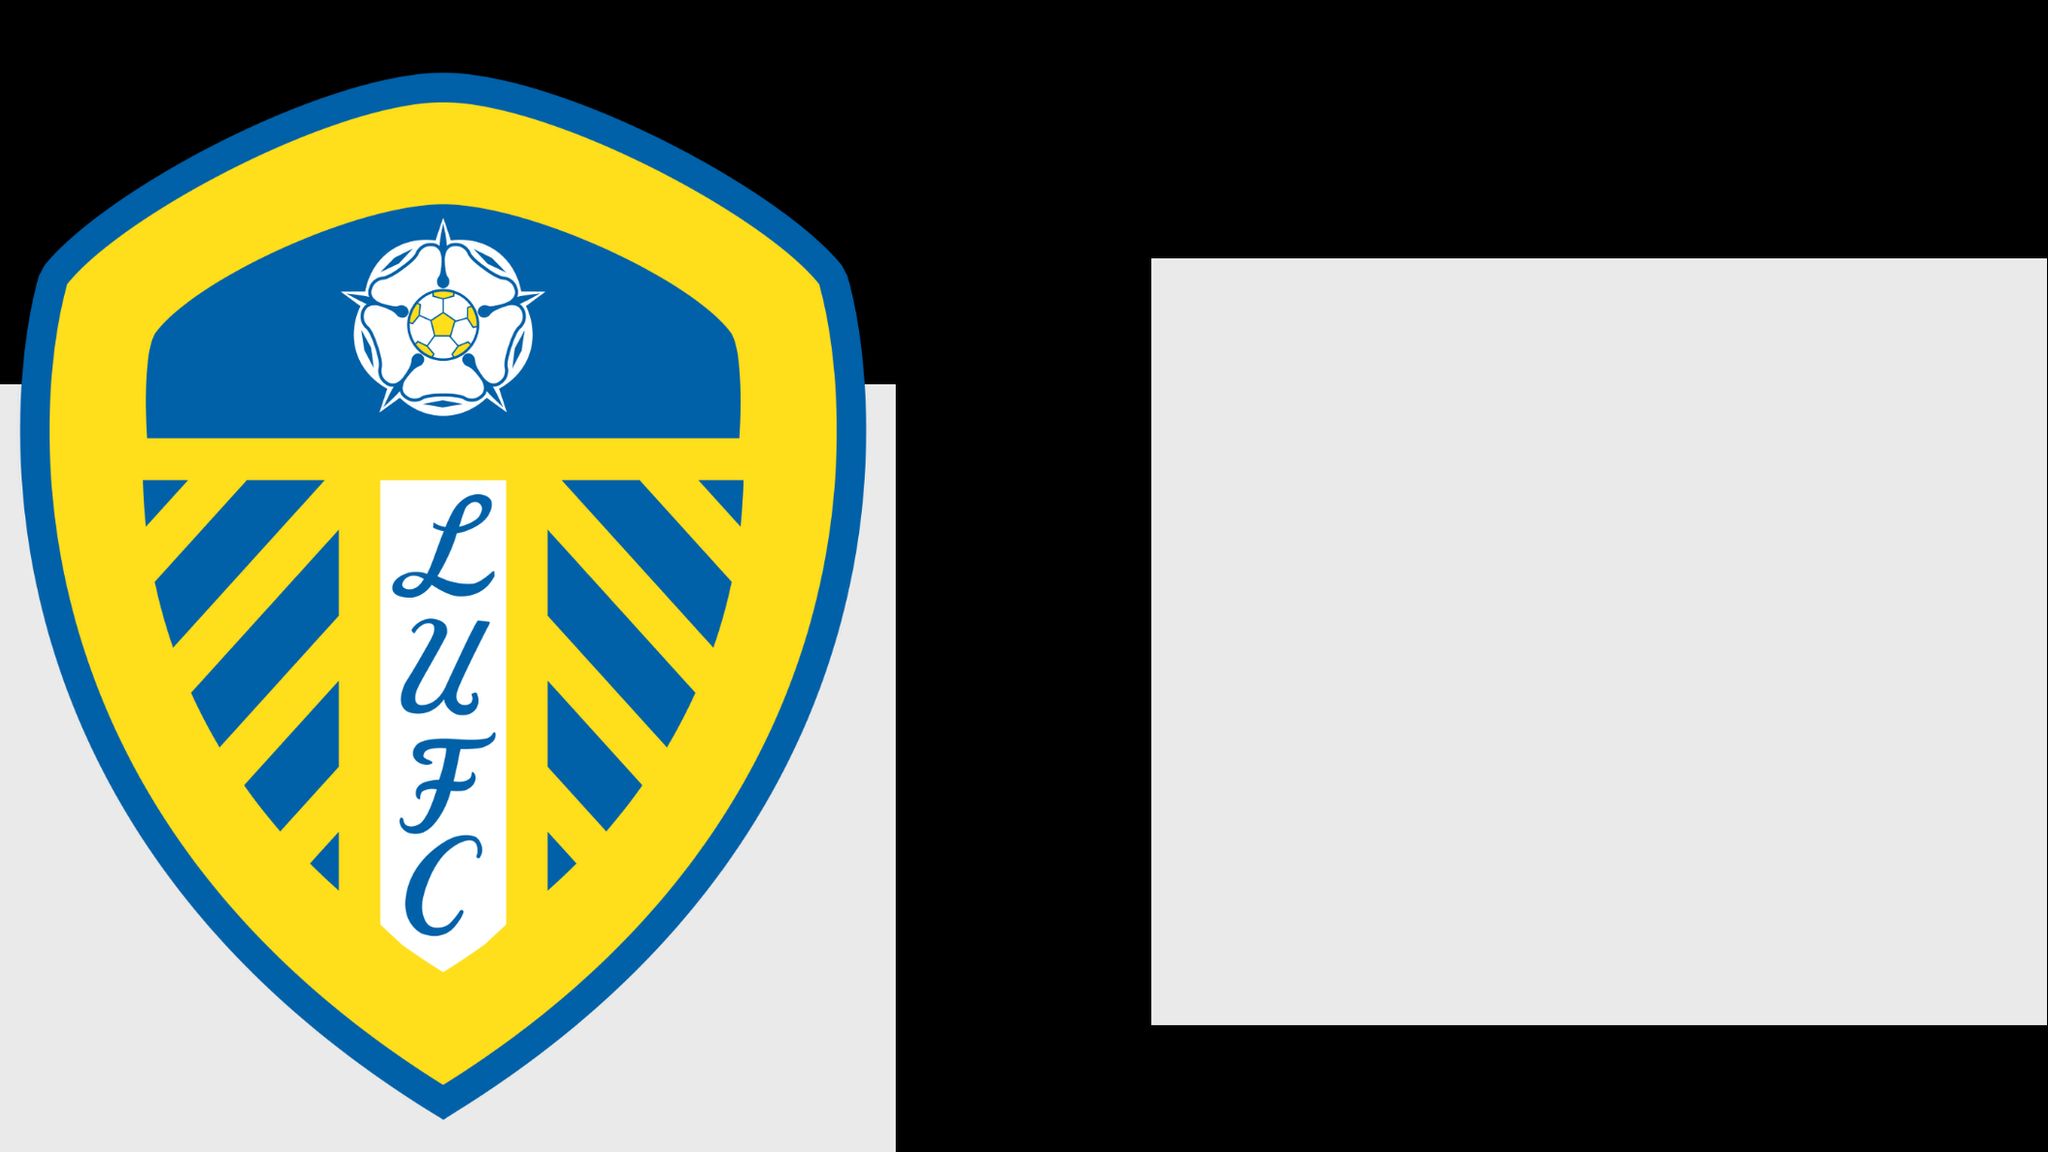 Leeds United club badge